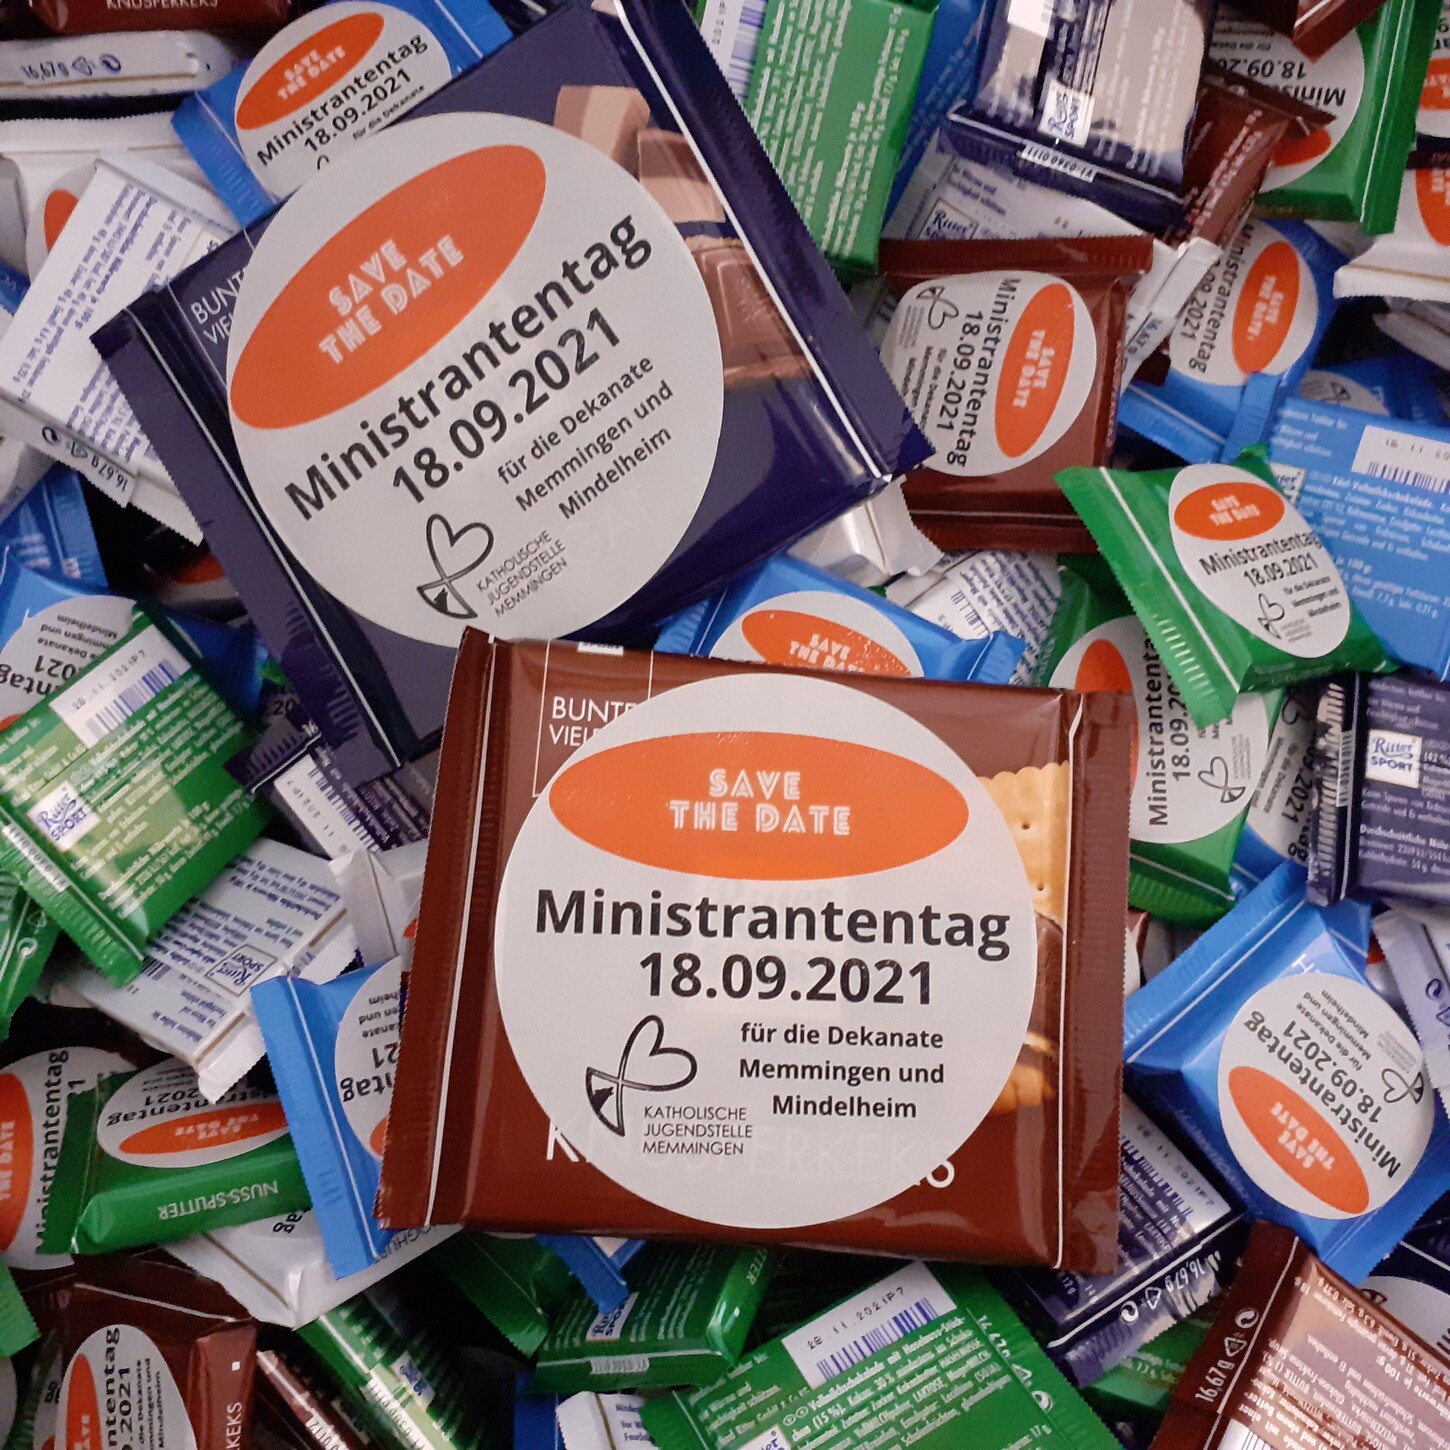 Schokoladentafeln als "Save-the-date" für den Ministrantentag (Montag, 08. März 2021)